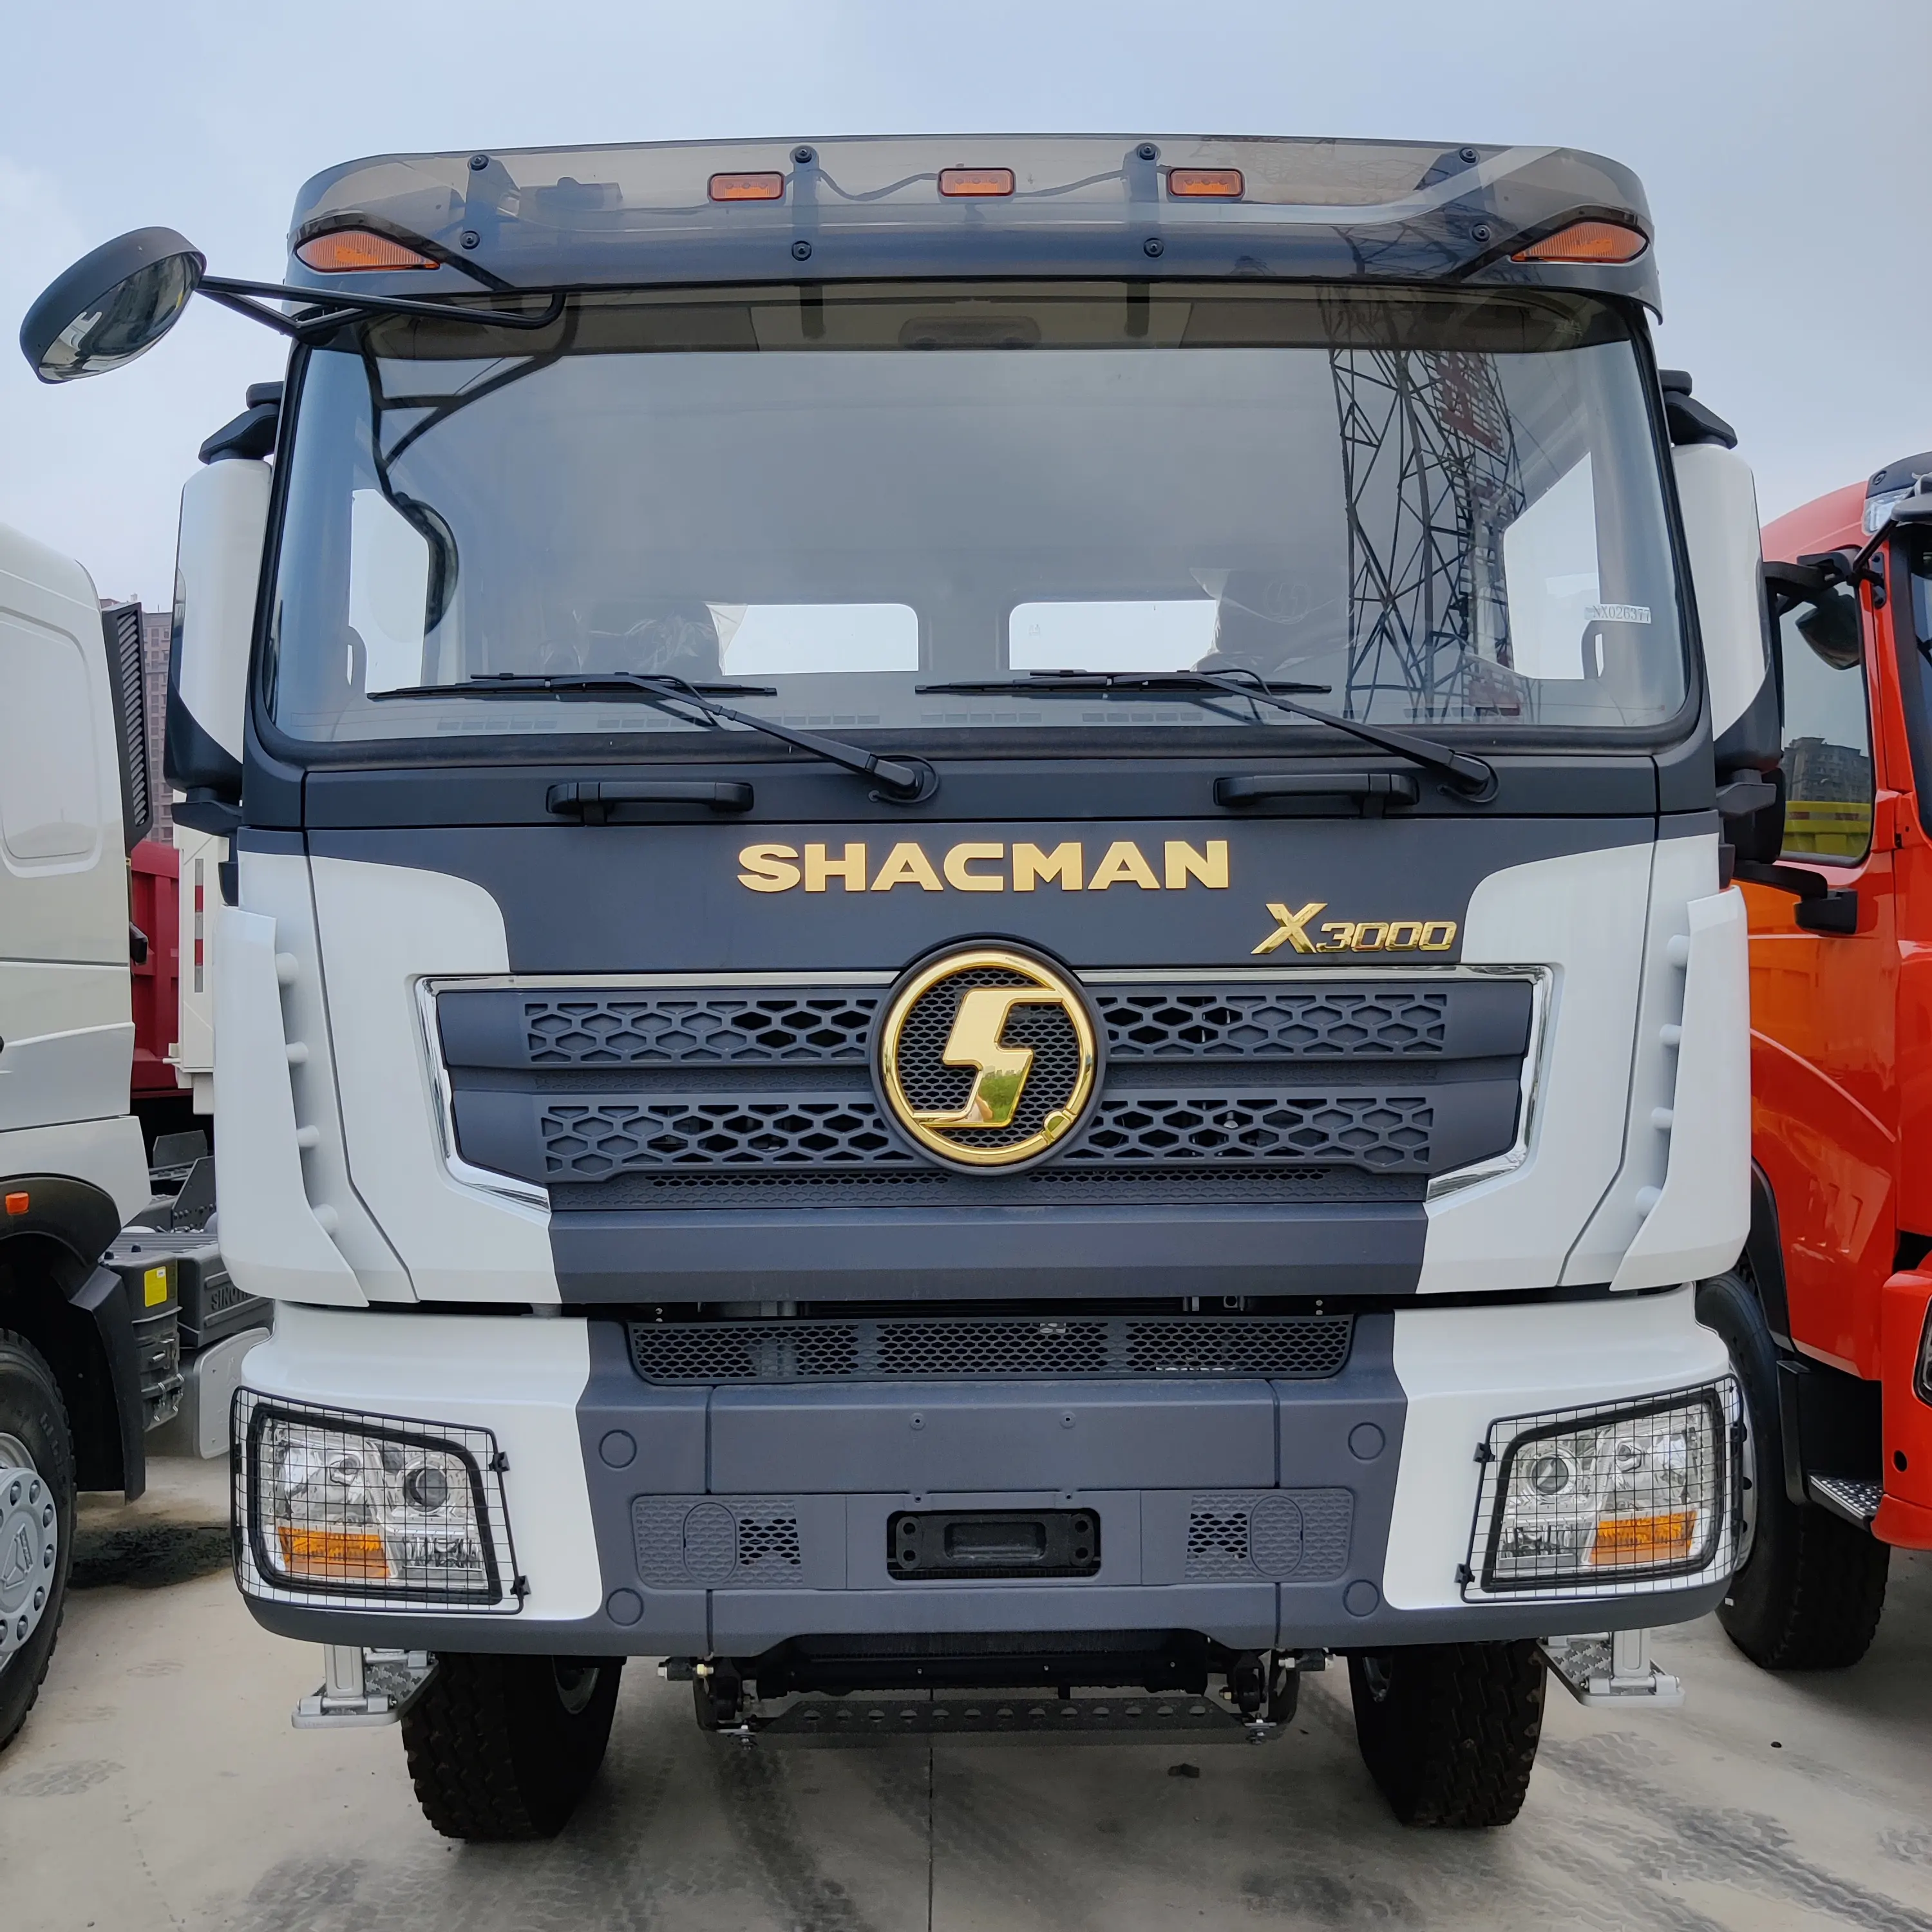 Shacman-Tractor usado, 6X4, 30 toneladas, nuevo